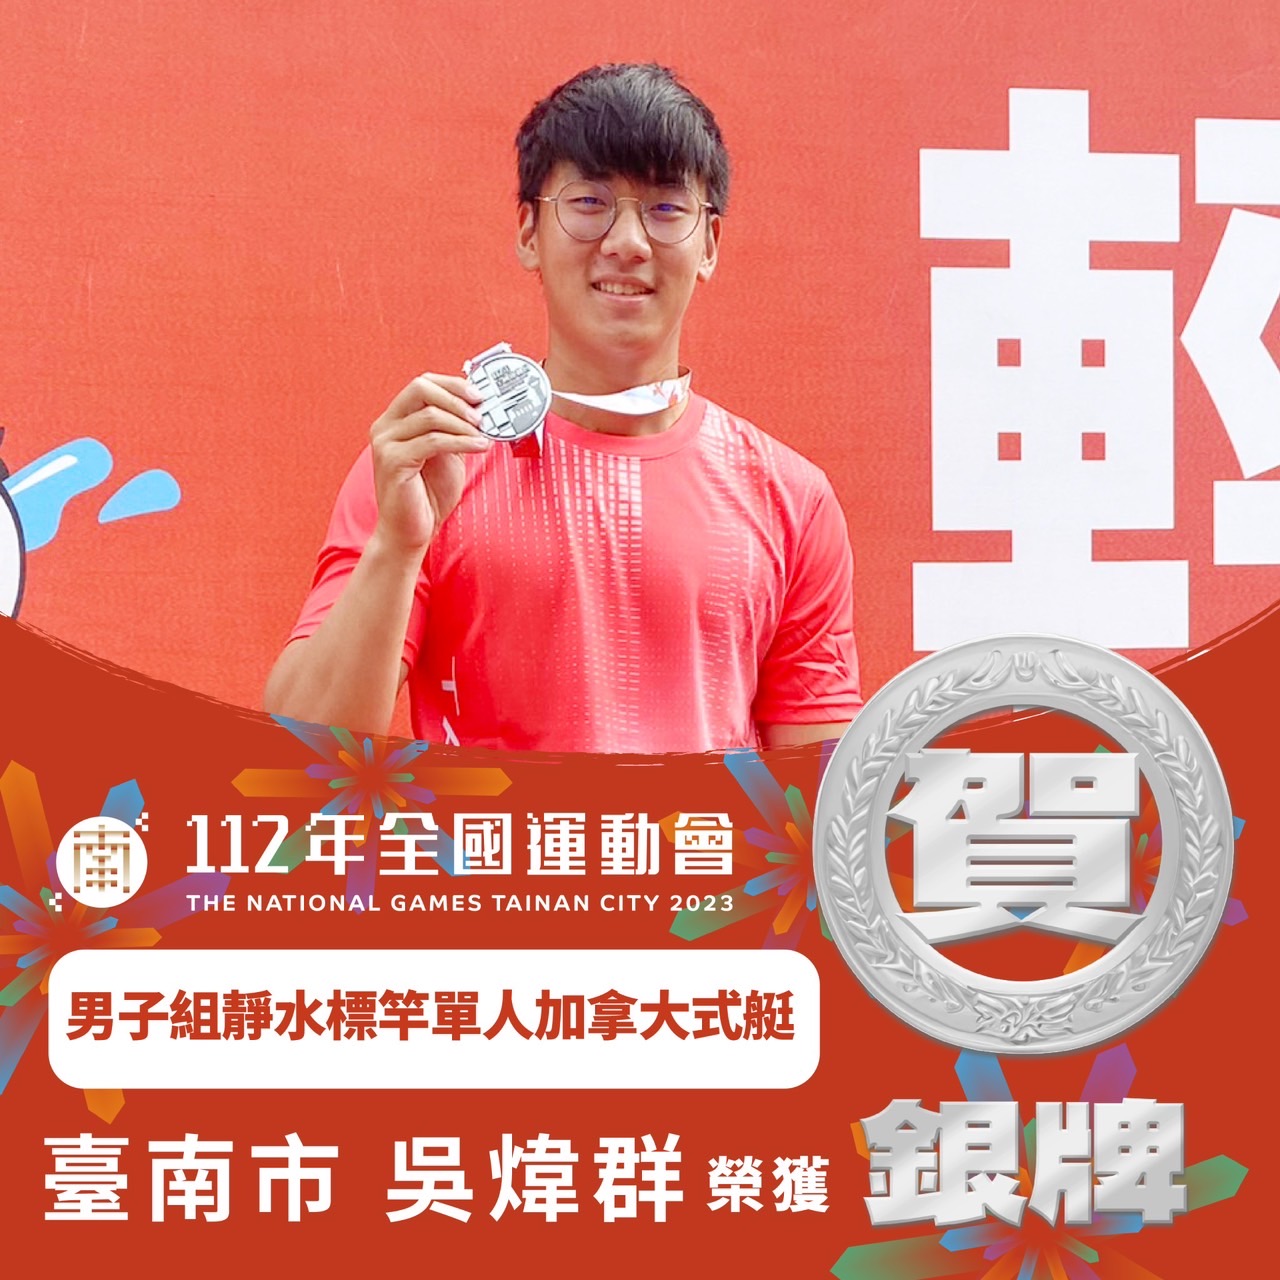 臺南市輕艇代表隊全運會2金1銀1銅 輕艇金牌數全國第三